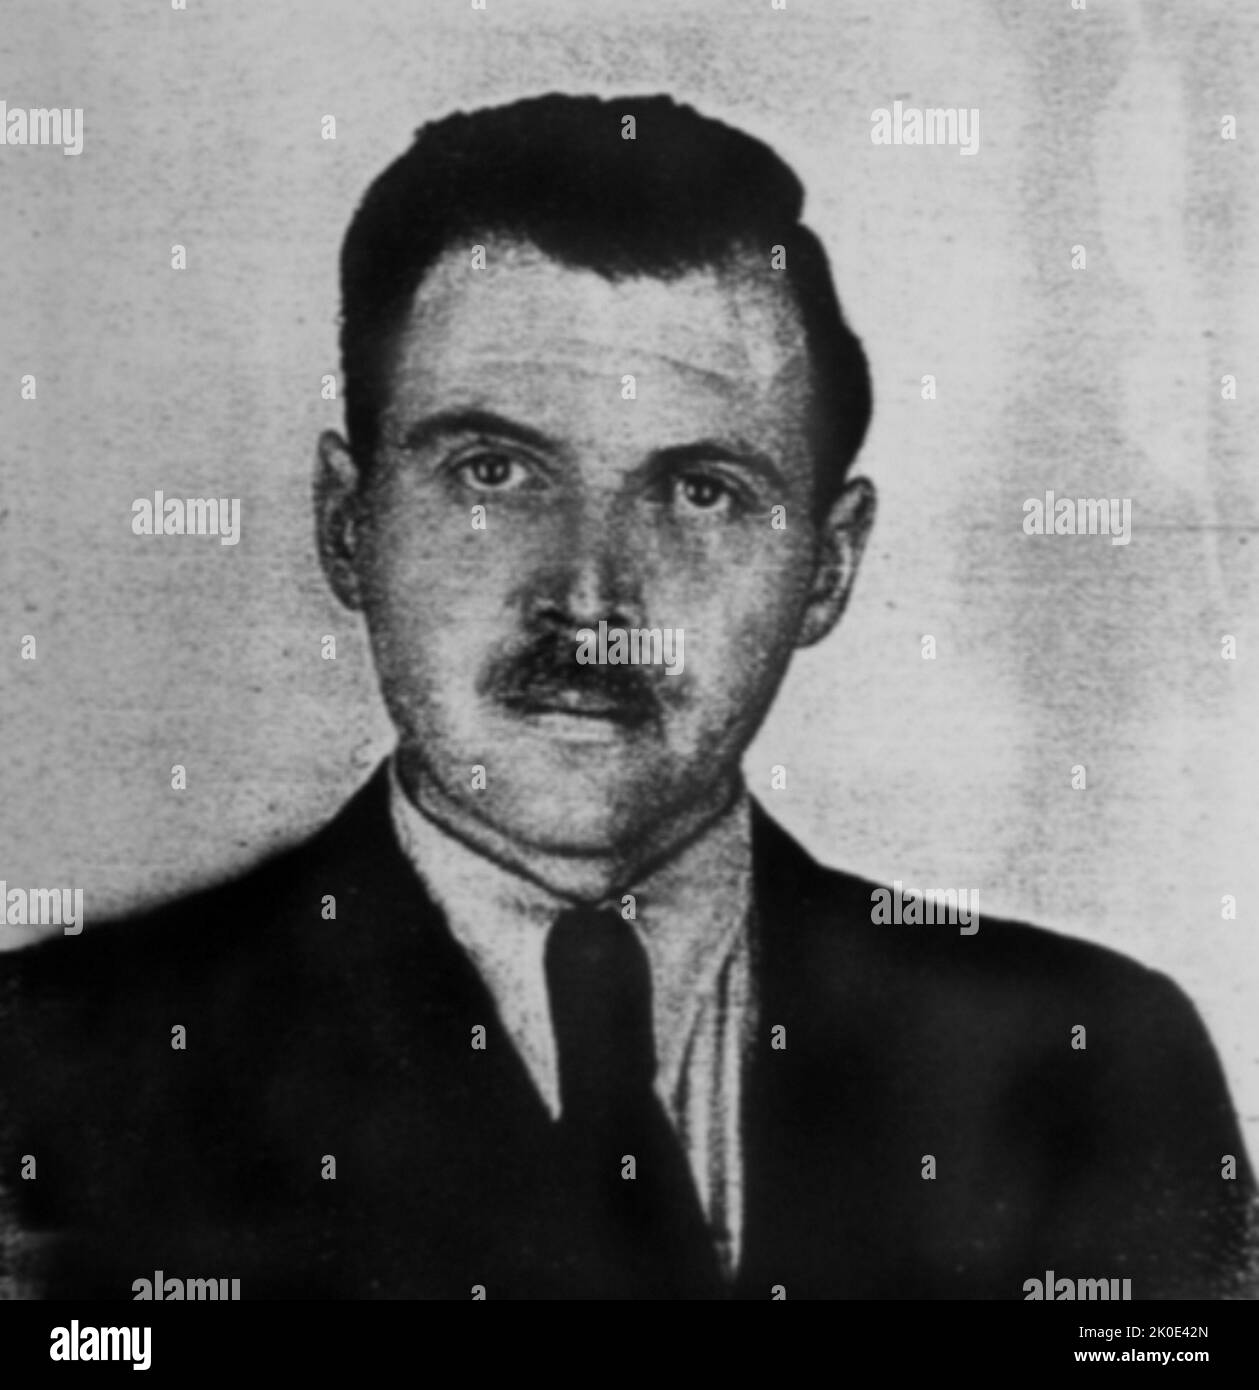 Josef Mengele (1911-1979), officier SS allemand. Photo prise par un photographe de police en 1956 à Buenos Aires pour le document d'identification argentin de Mengele. Banque D'Images